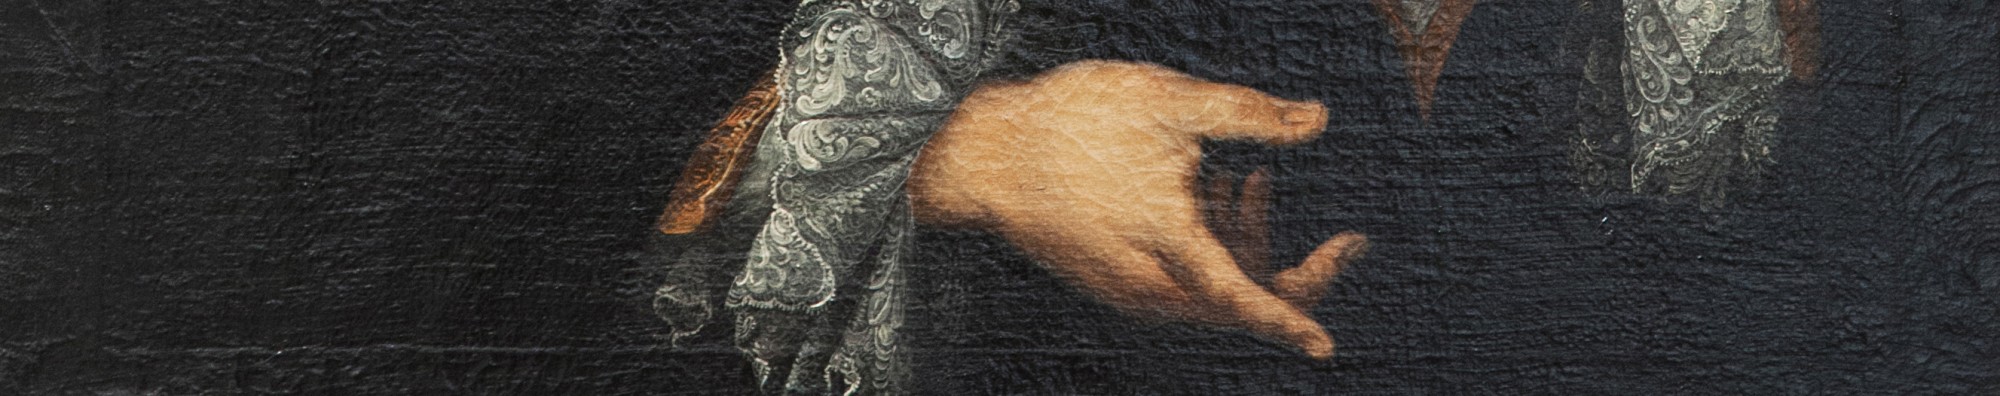 Ausschnitt eines Gemäldes: Eine Hand und altmodische Kleidung sind zu sehen.